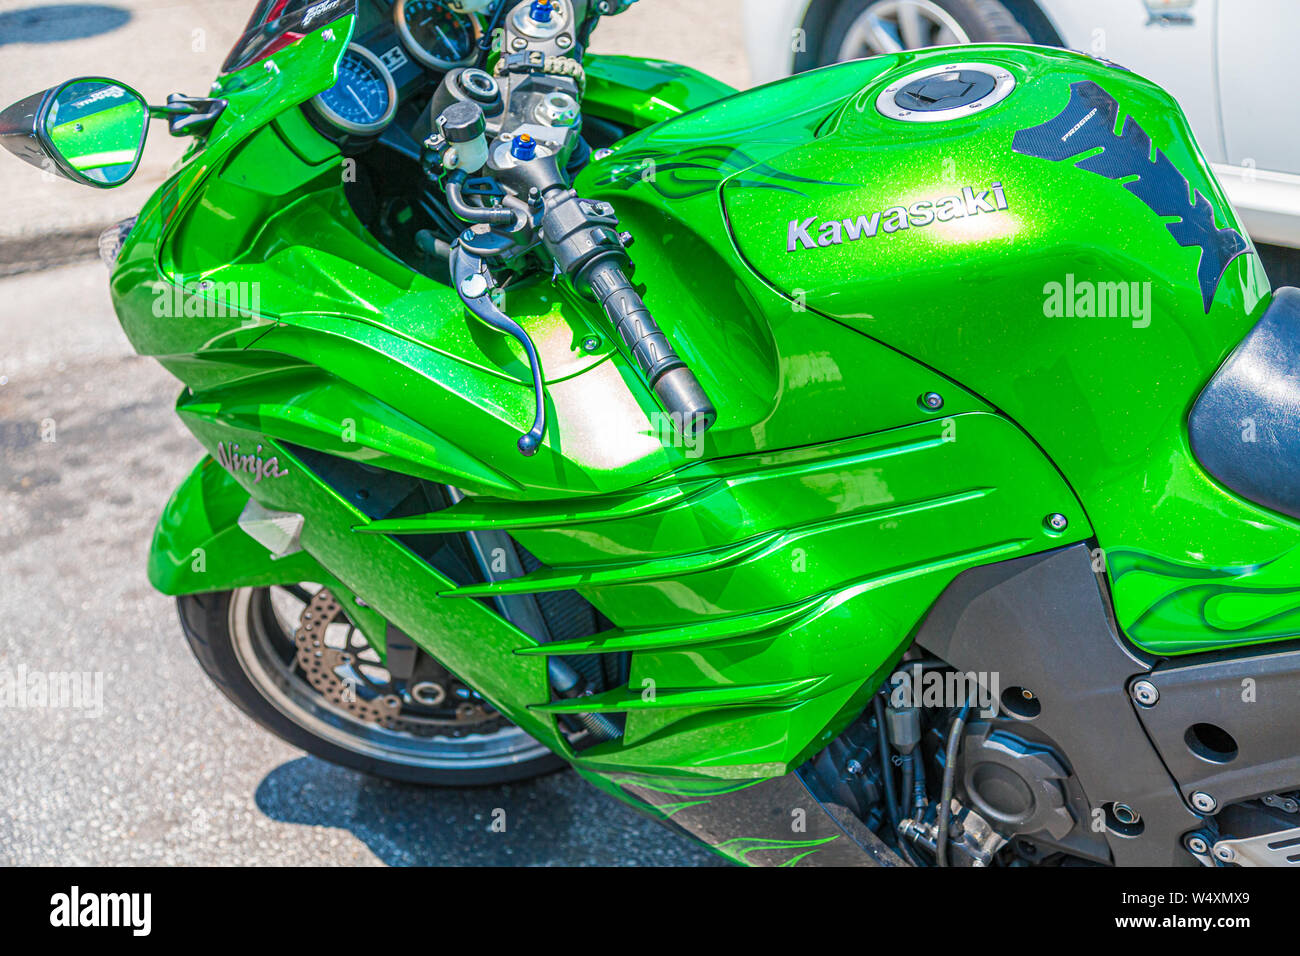 Green kawasaki ninja immagini e fotografie stock ad alta risoluzione - Alamy